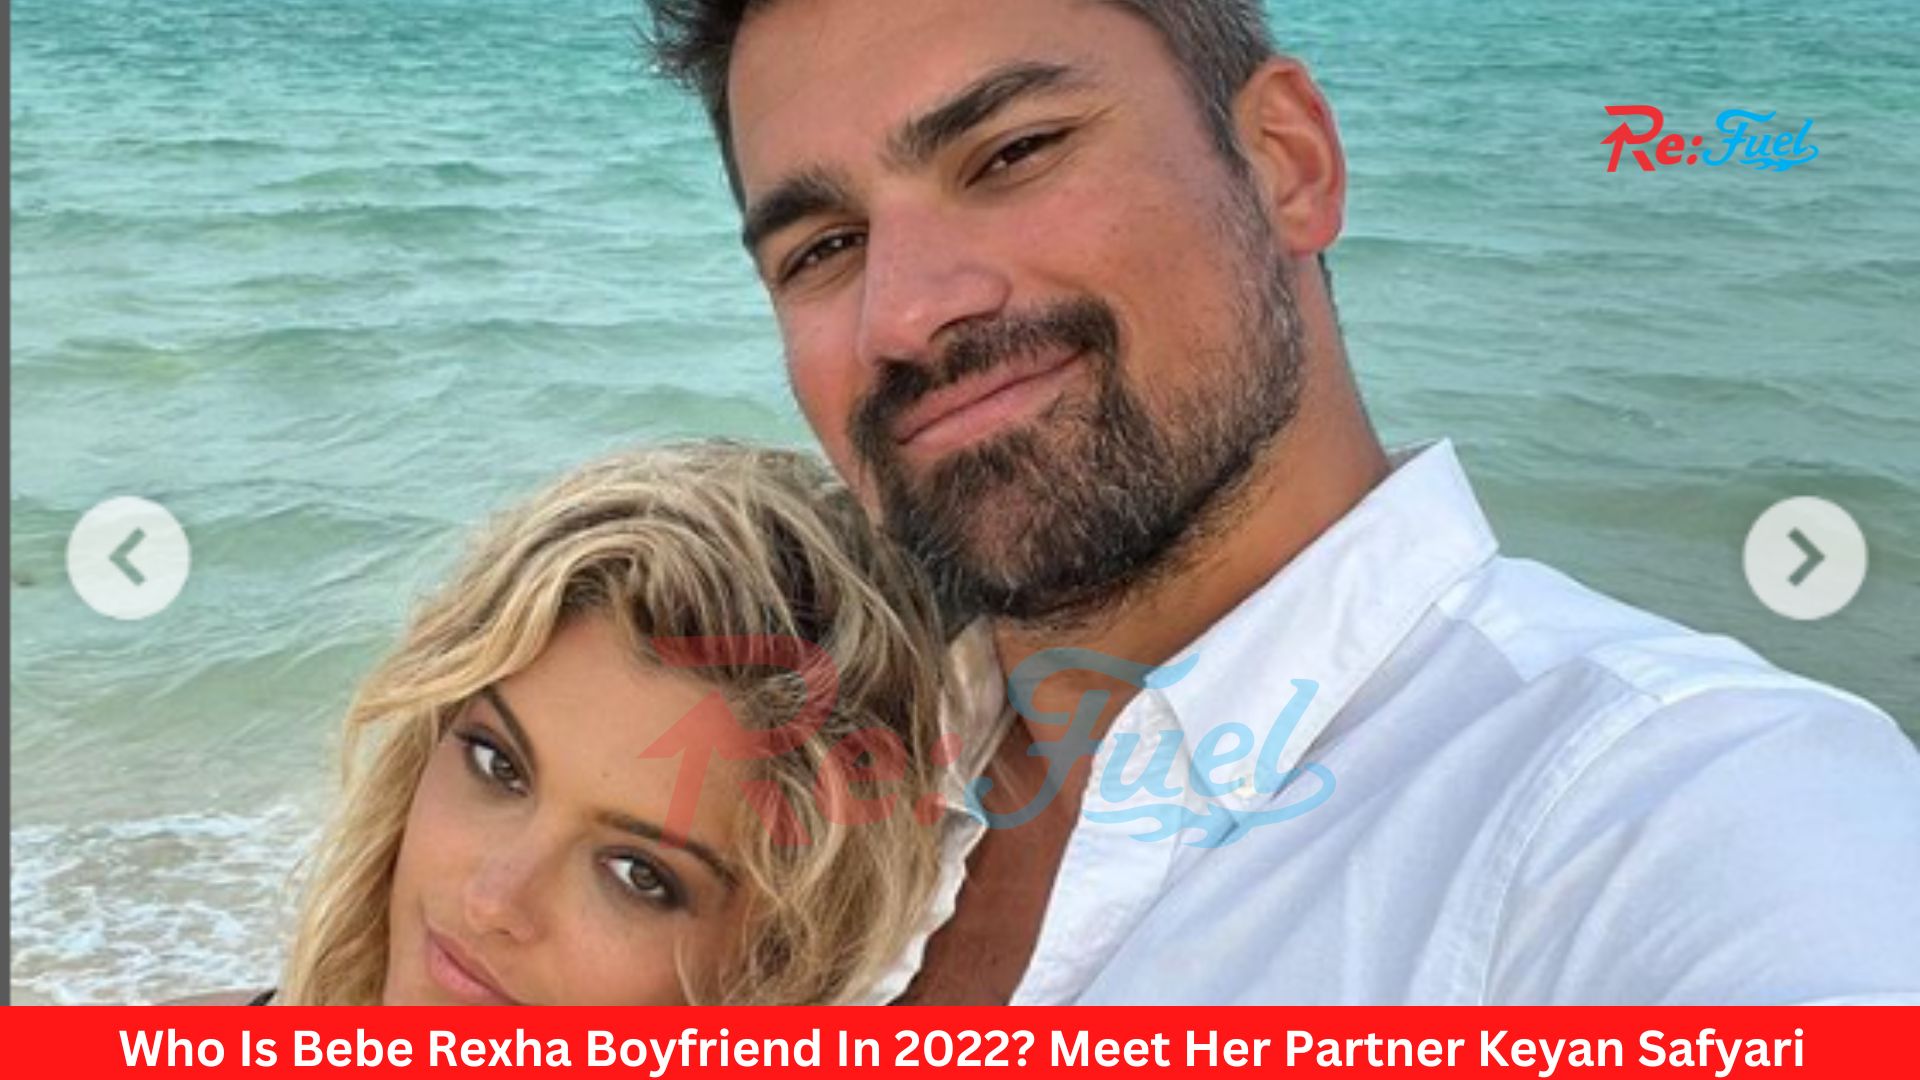 Who Is Bebe Rexha Boyfriend In 2022? Meet Her Partner Keyan Safyari